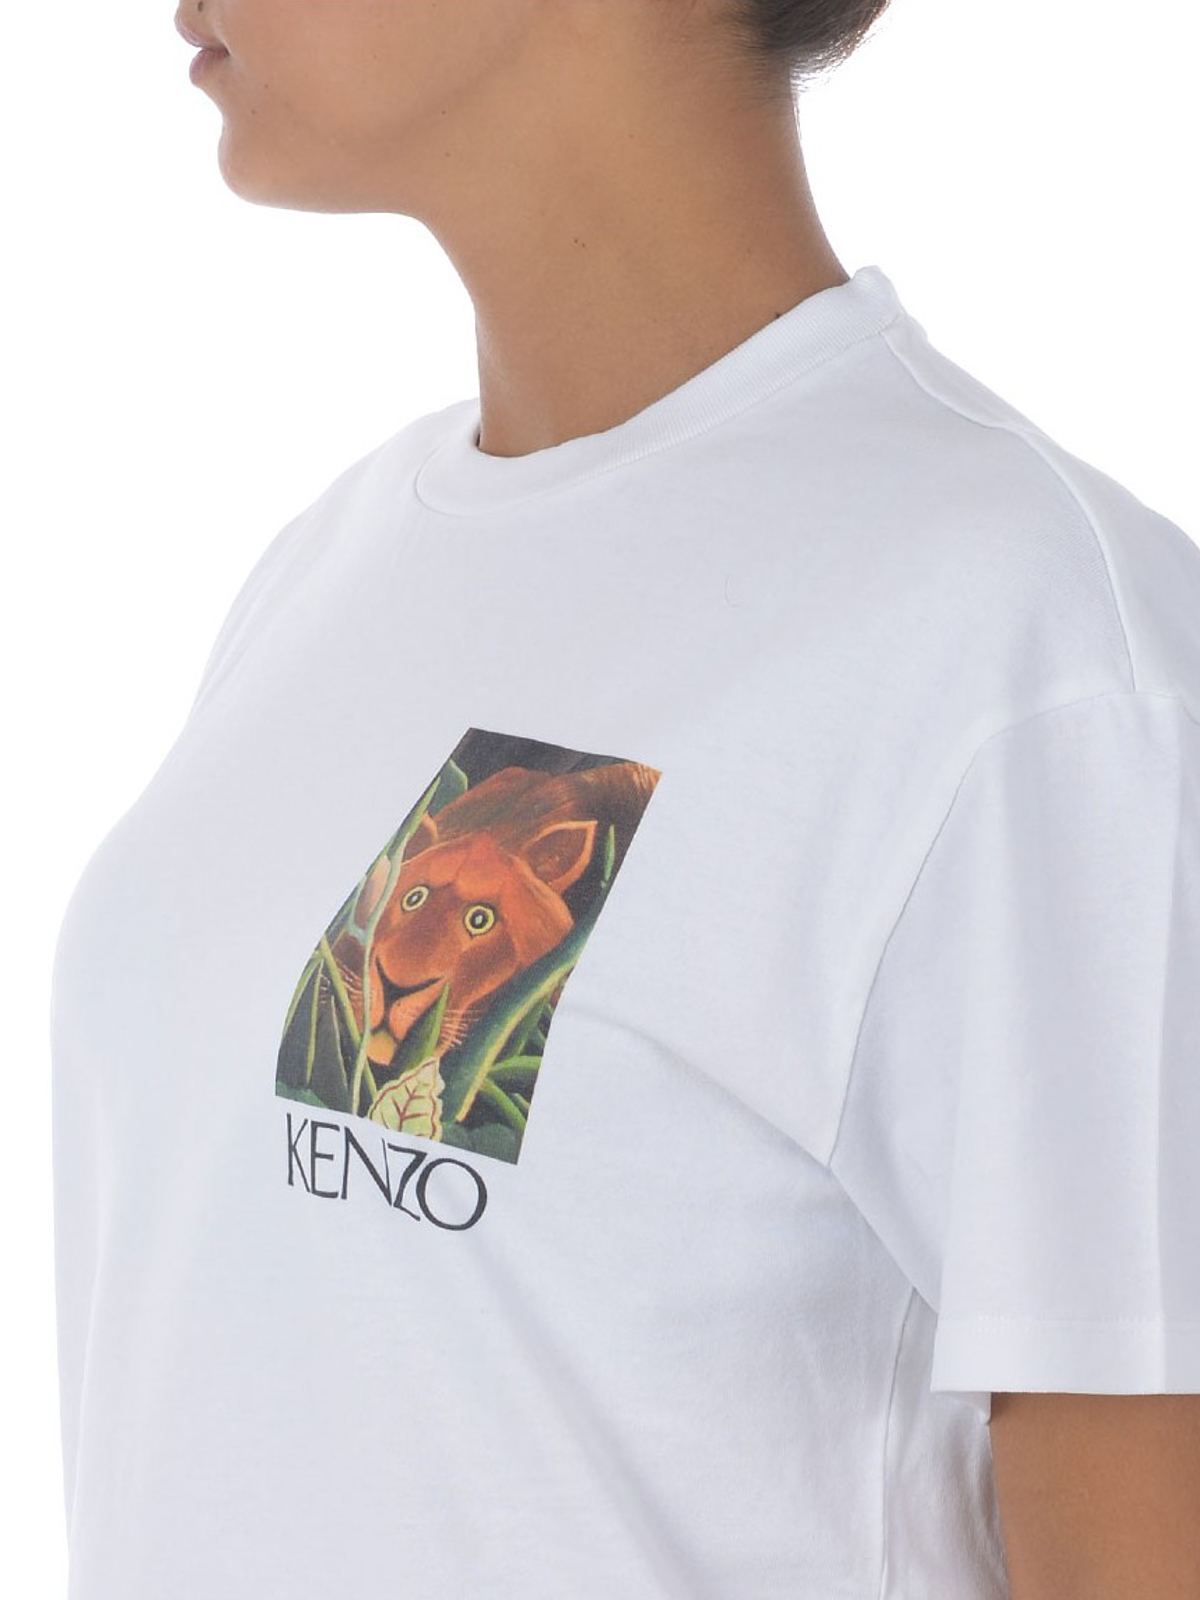 kenzo shirt cheap